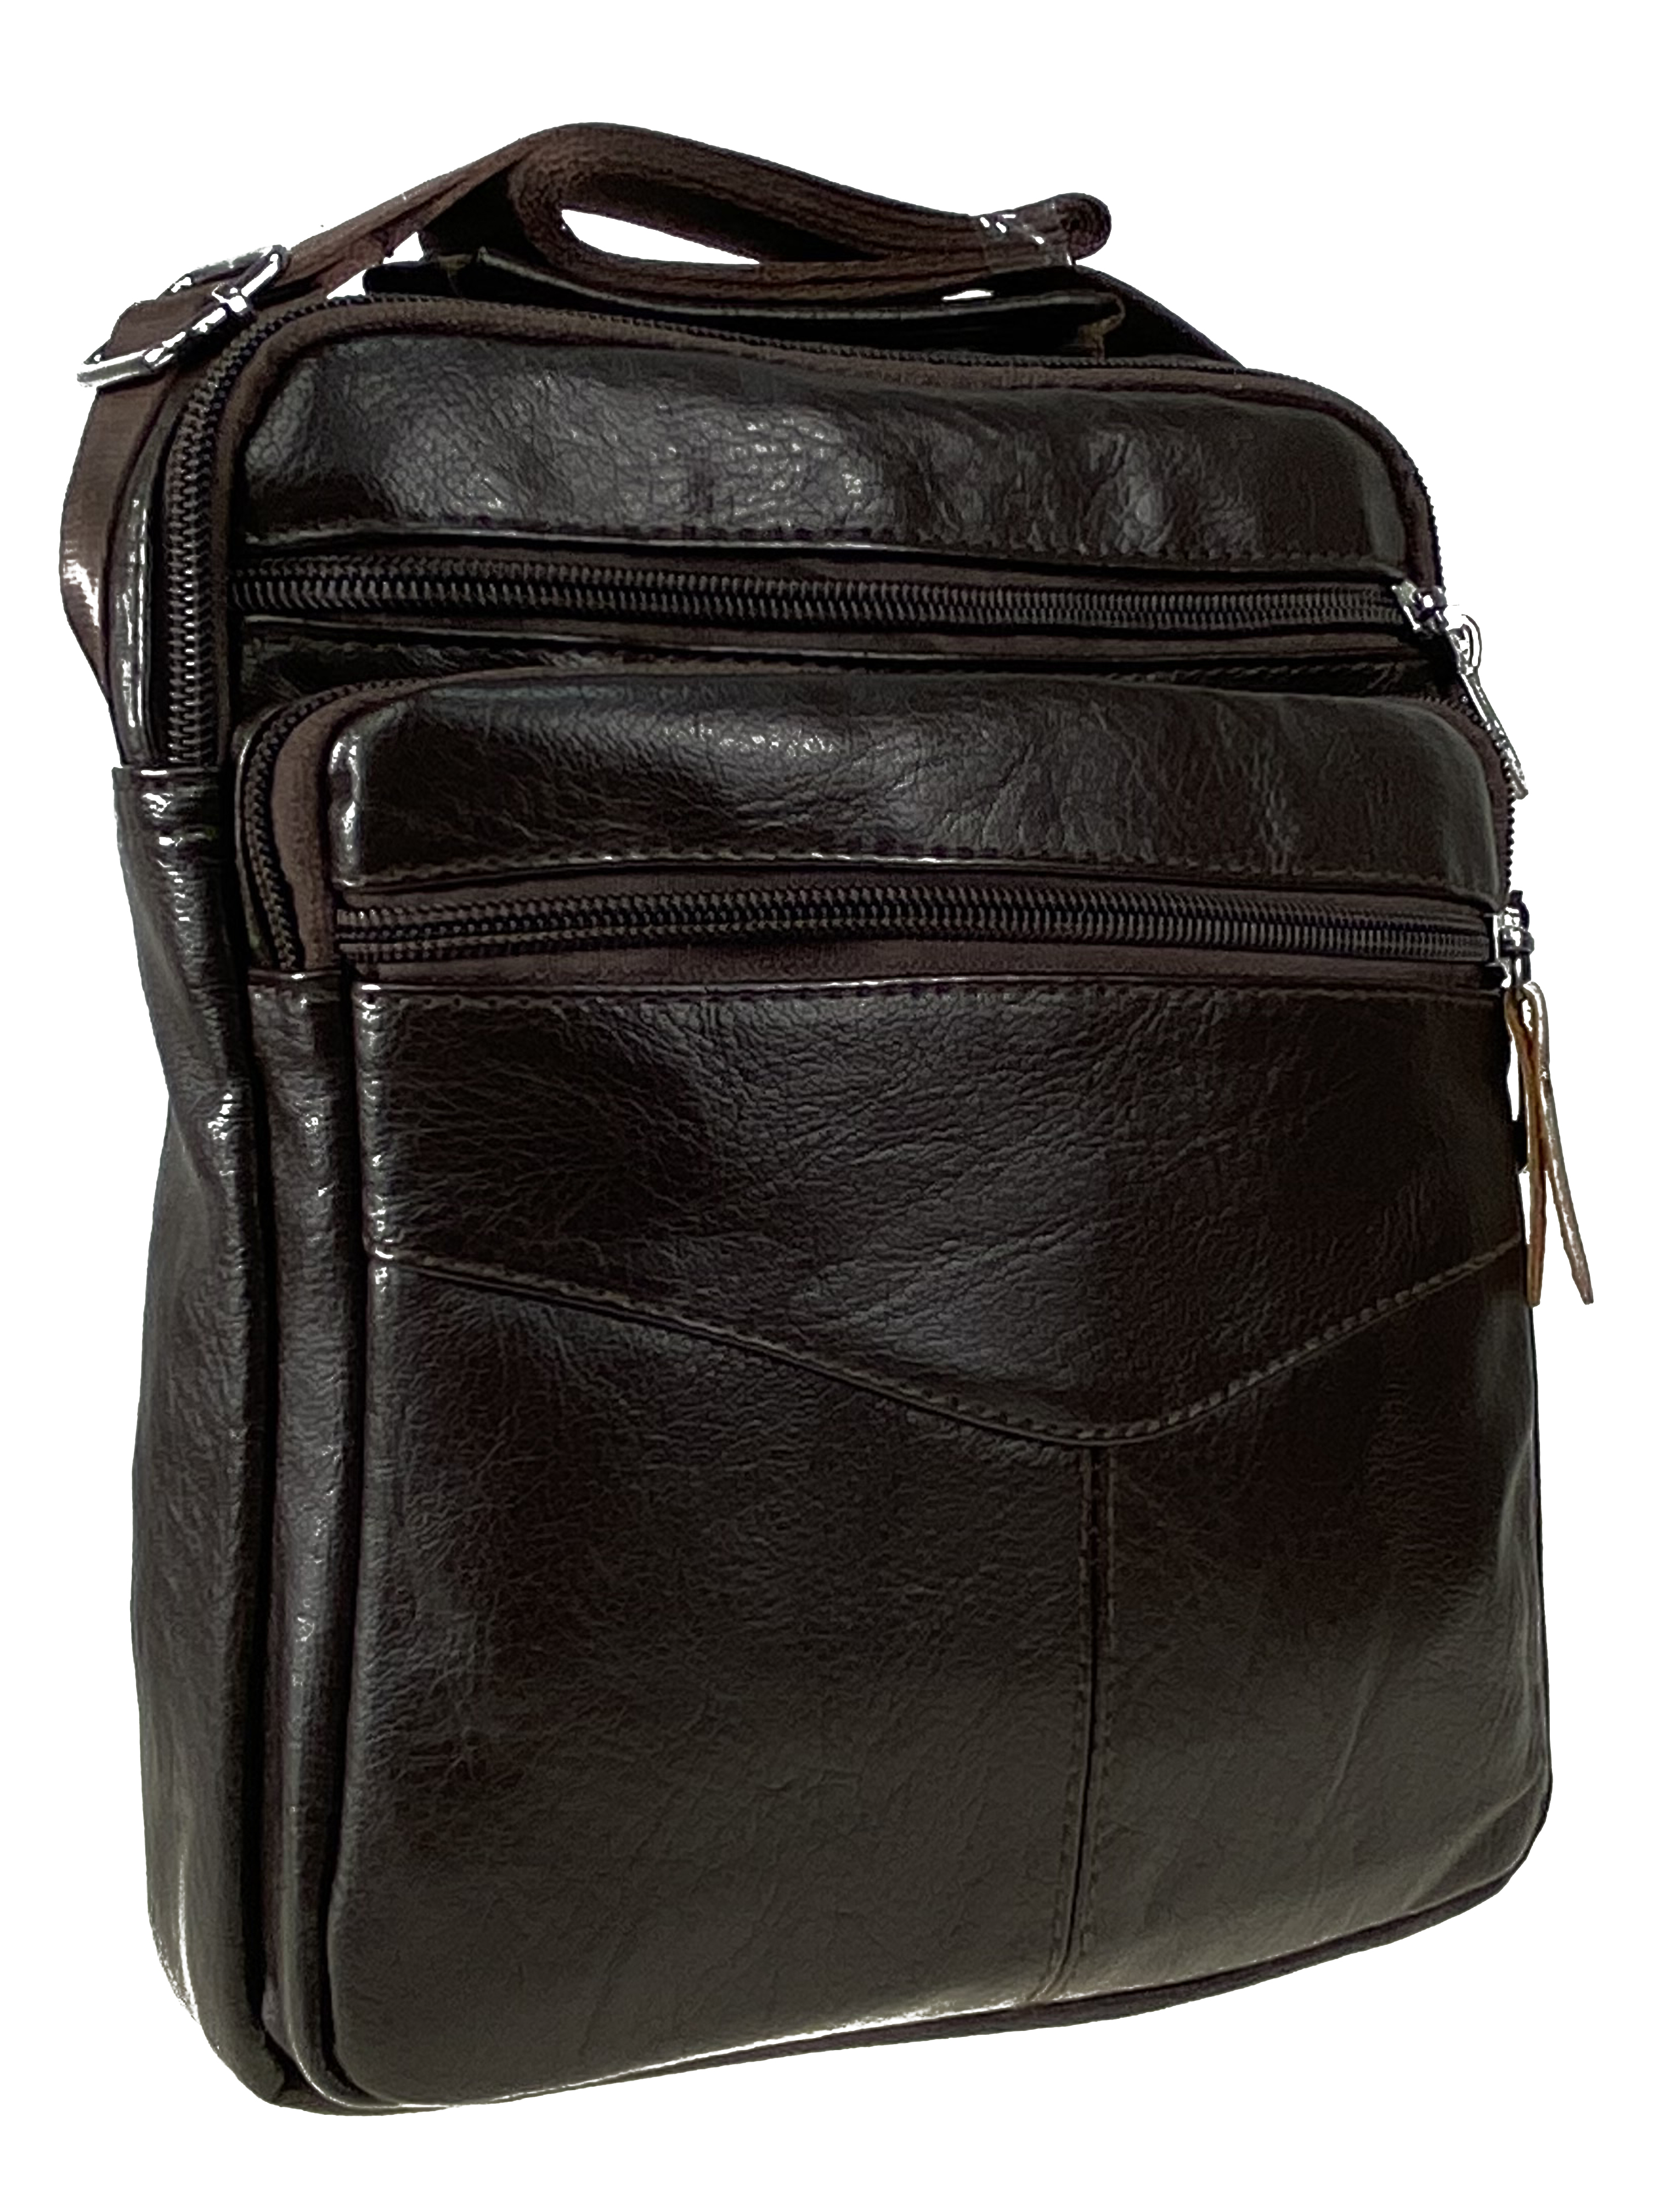 Мужская сумка через плечо из искусственной кожи, цвет коричневый